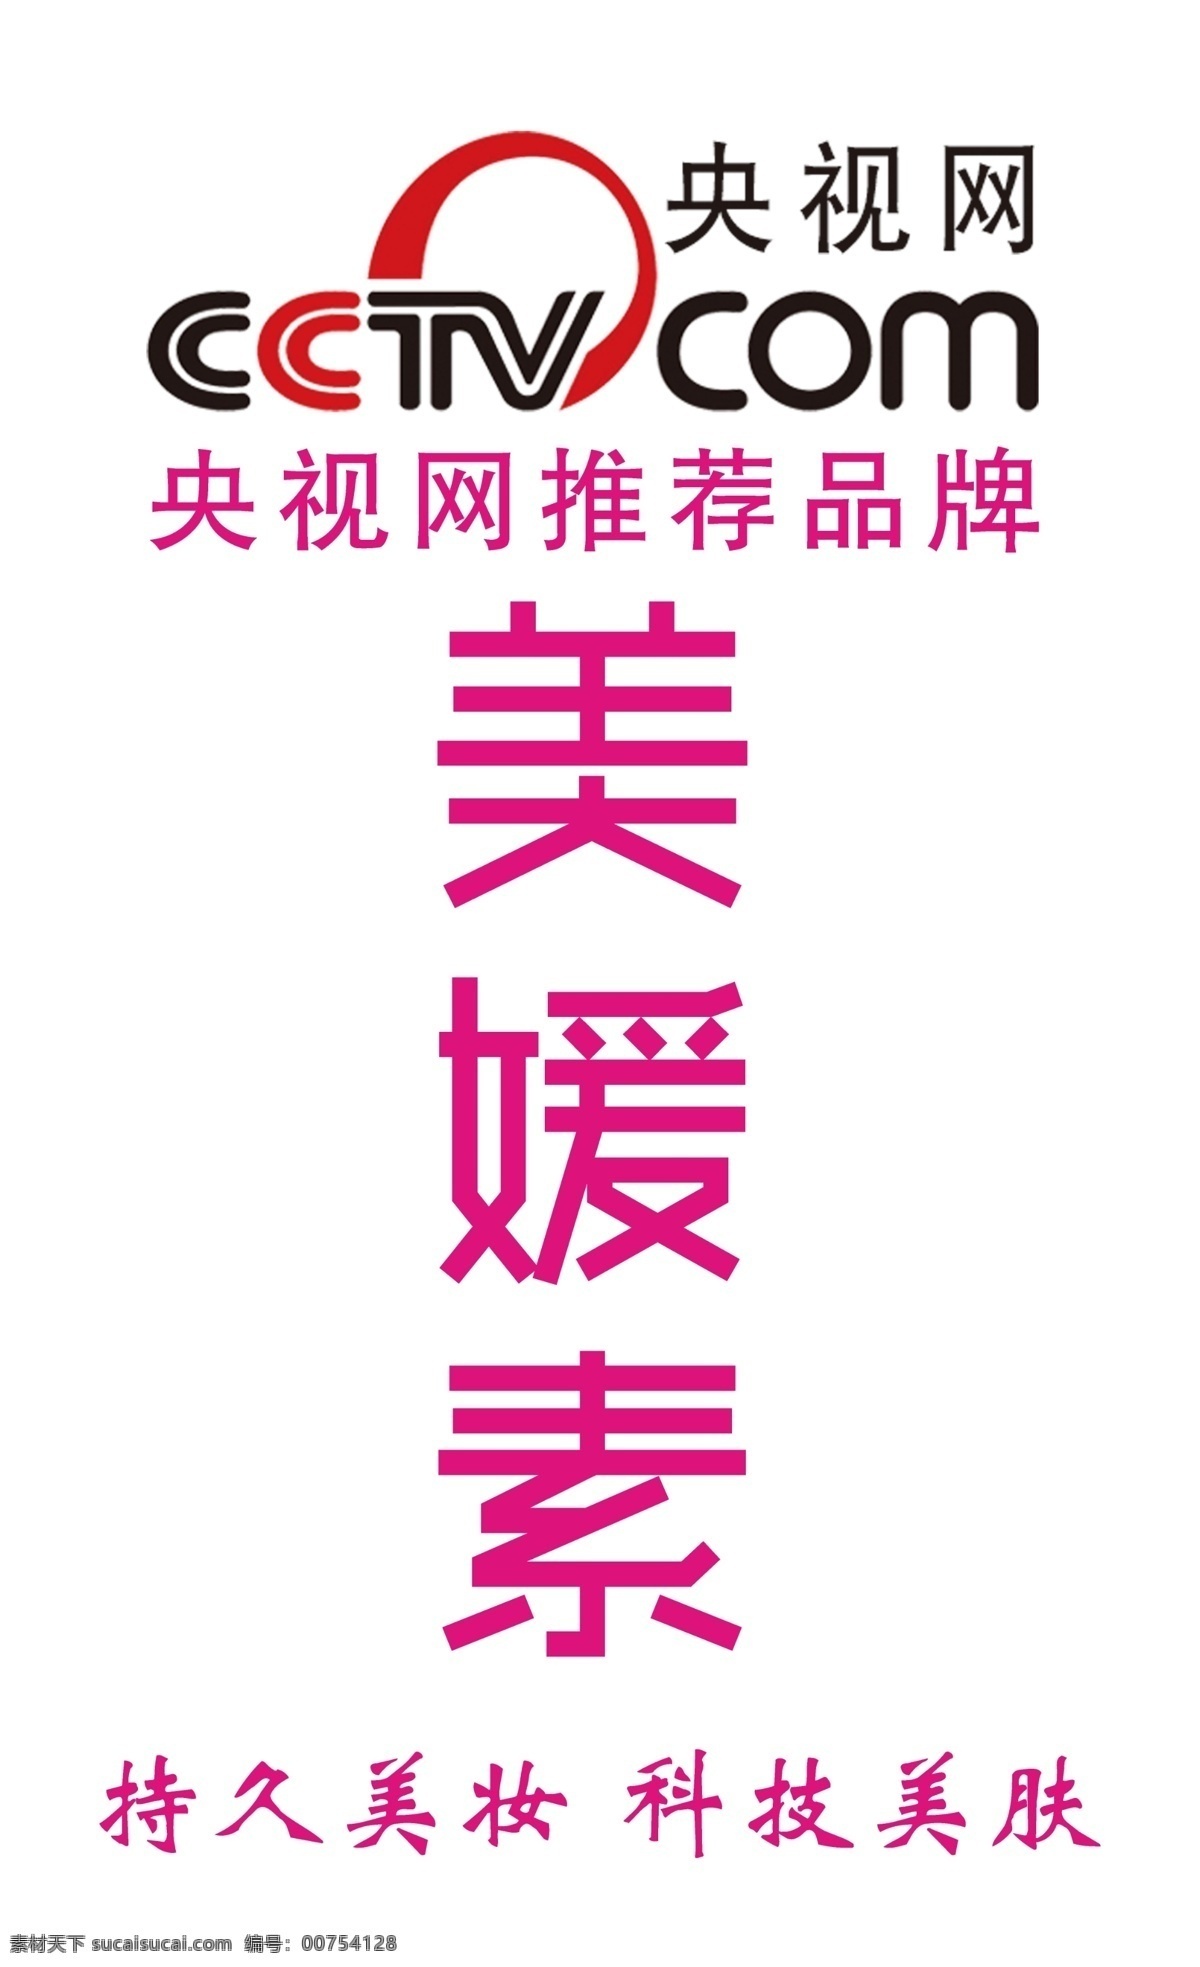 cctv 央视网 美容 美 媛 素 logo 分层